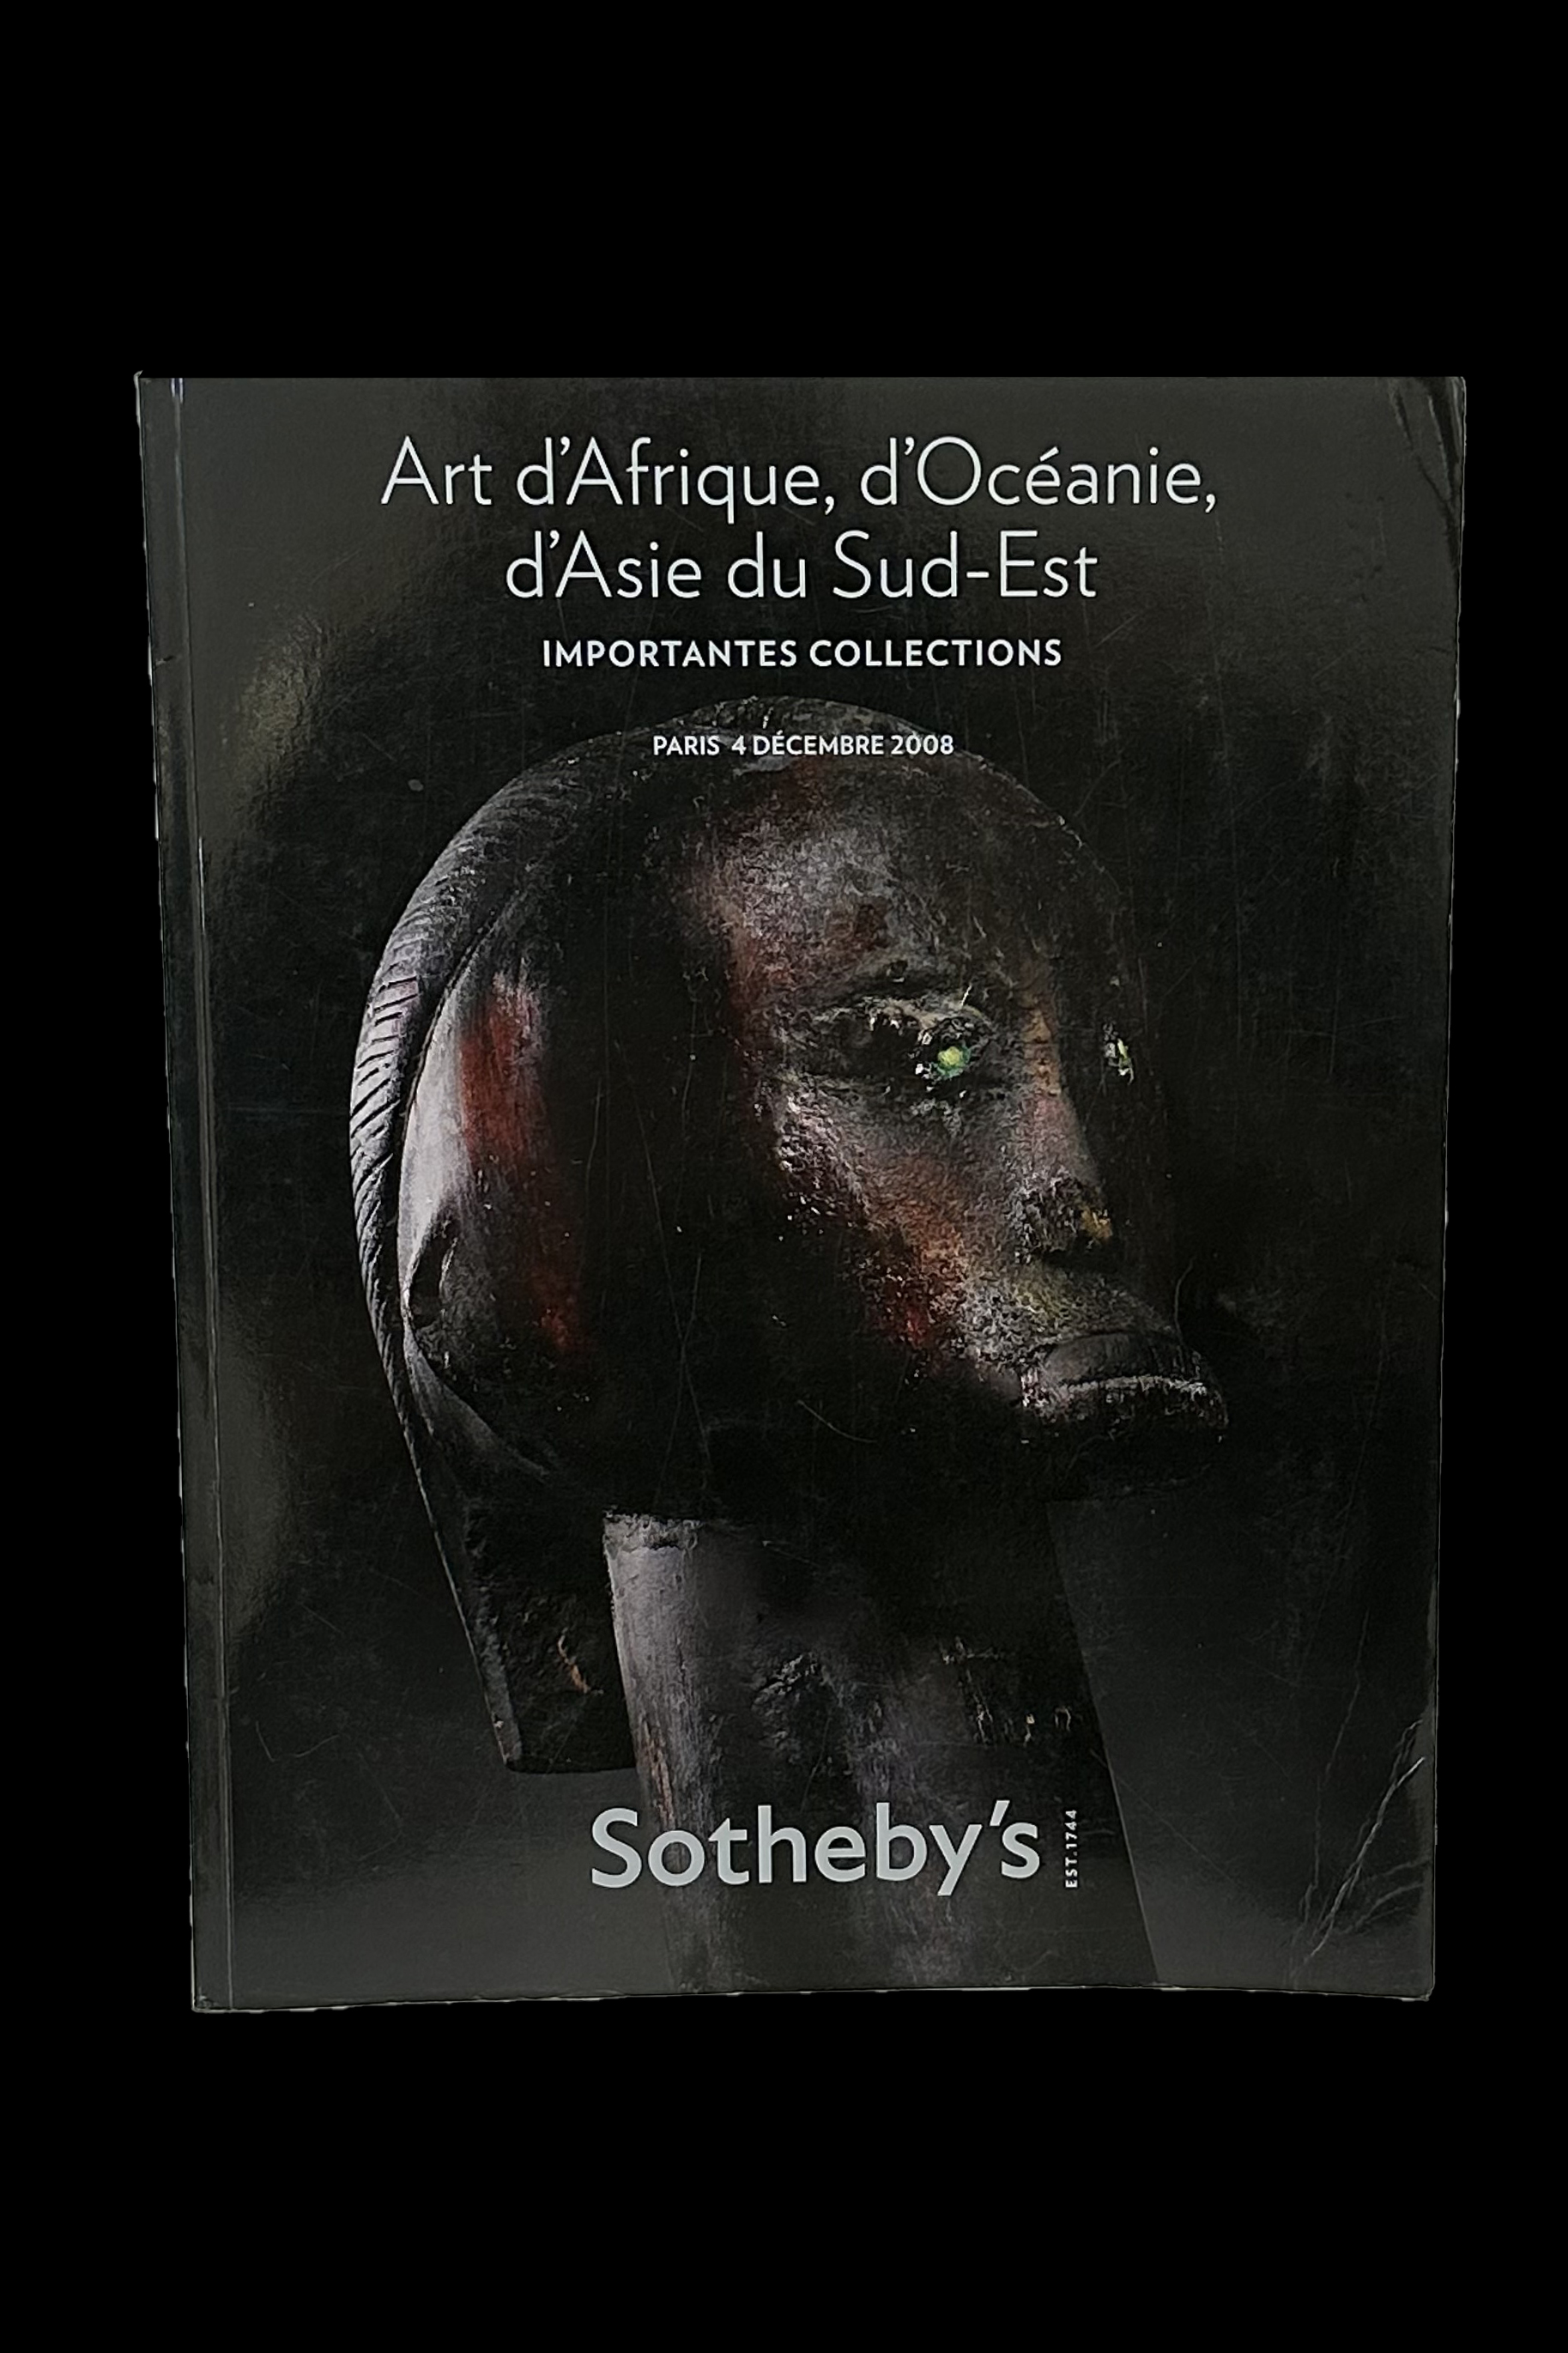 Sotheby's - Art d'Afrique, d'Ocanie, d'Asie du Sud-Est - Importantes Collections - Paris, December 2008